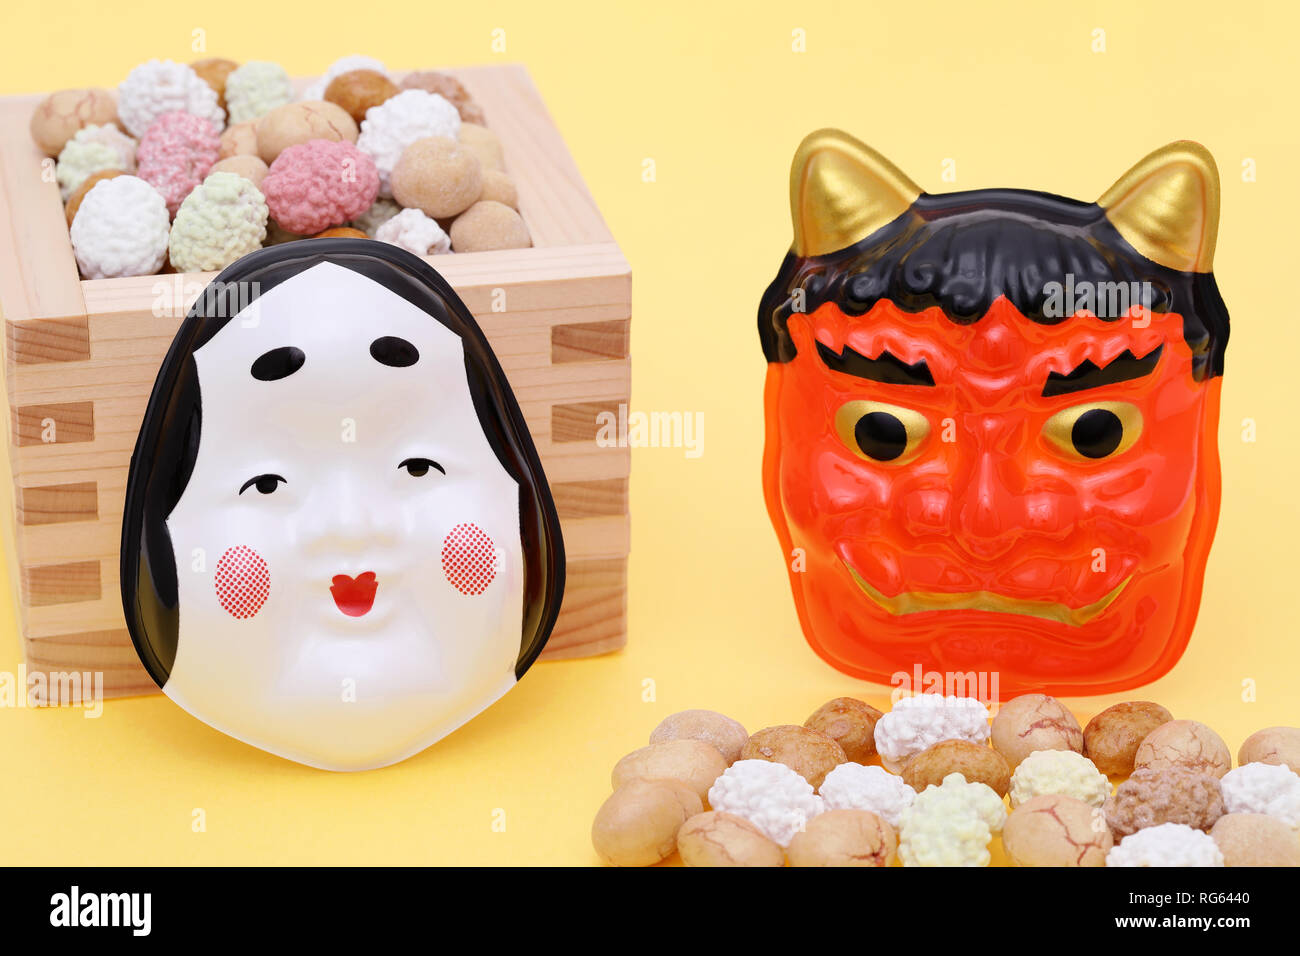 Japanische traditionelle Veranstaltung, Soja Snacks und Maske der Dämon auf eine jährliche Veranstaltung/Setsubun verwendet. Stockfoto